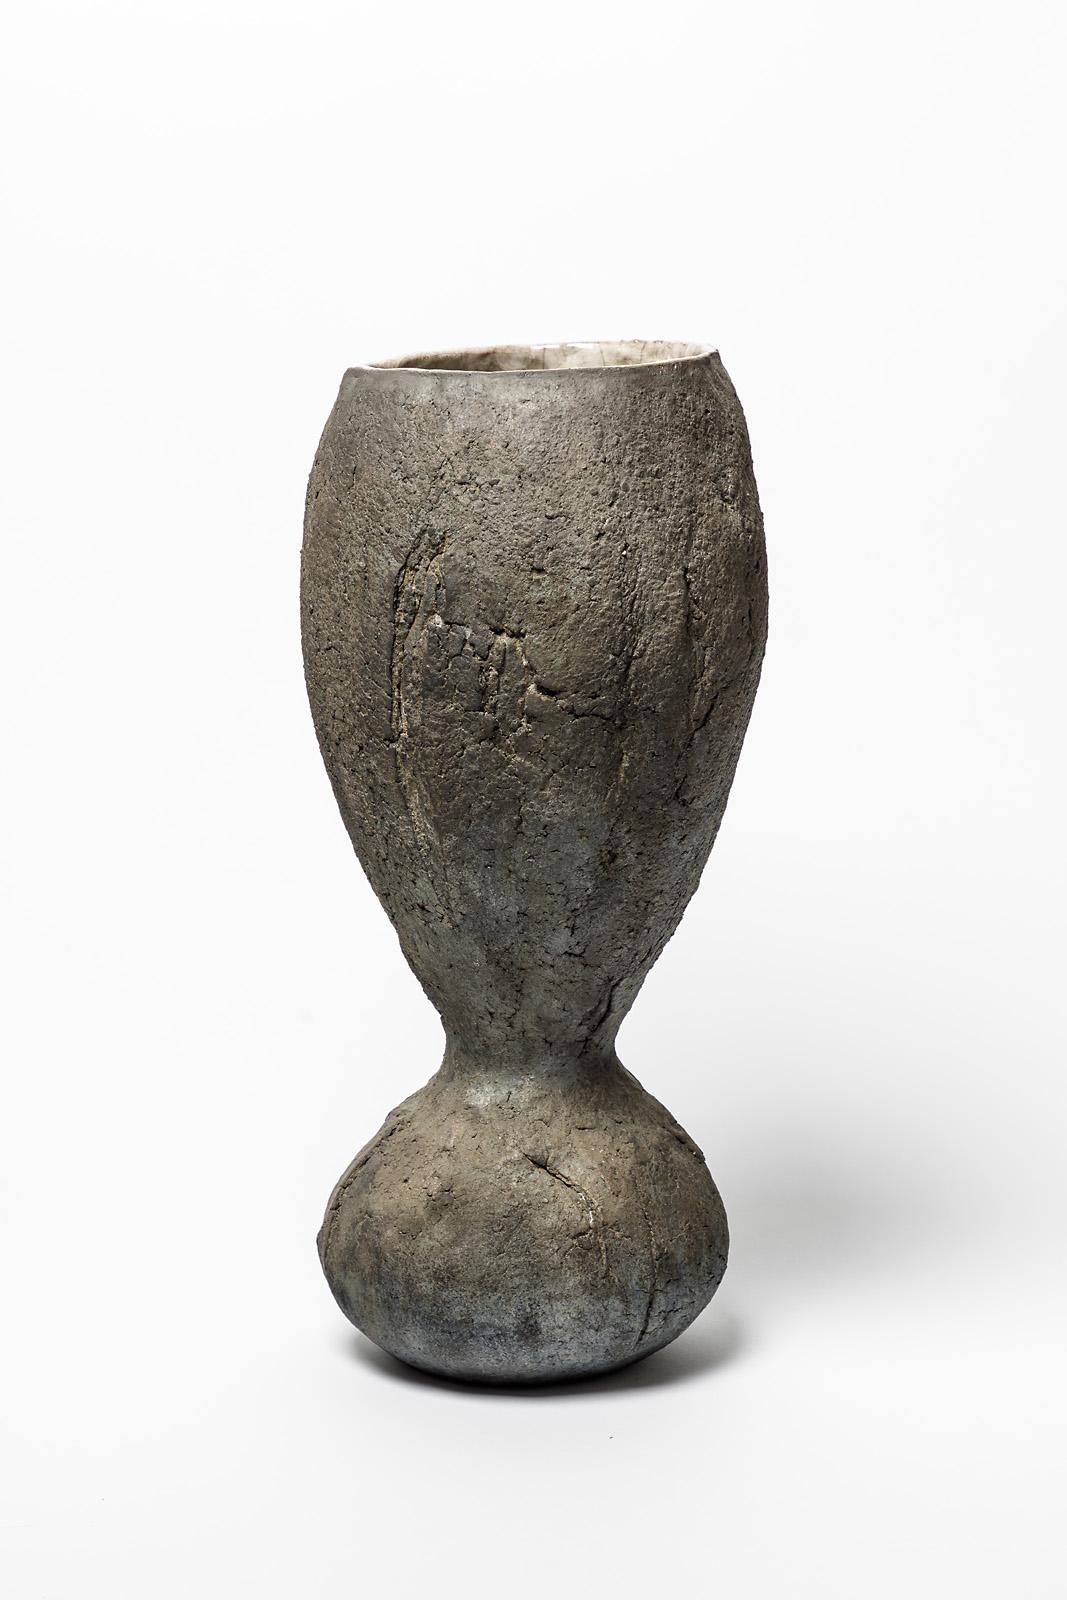 Un vase en céramique de Gisele Buthod- Garçon.
Conditions d'origine parfaites.
Signé sous la base.
Pièce unique.
Circa 2005.